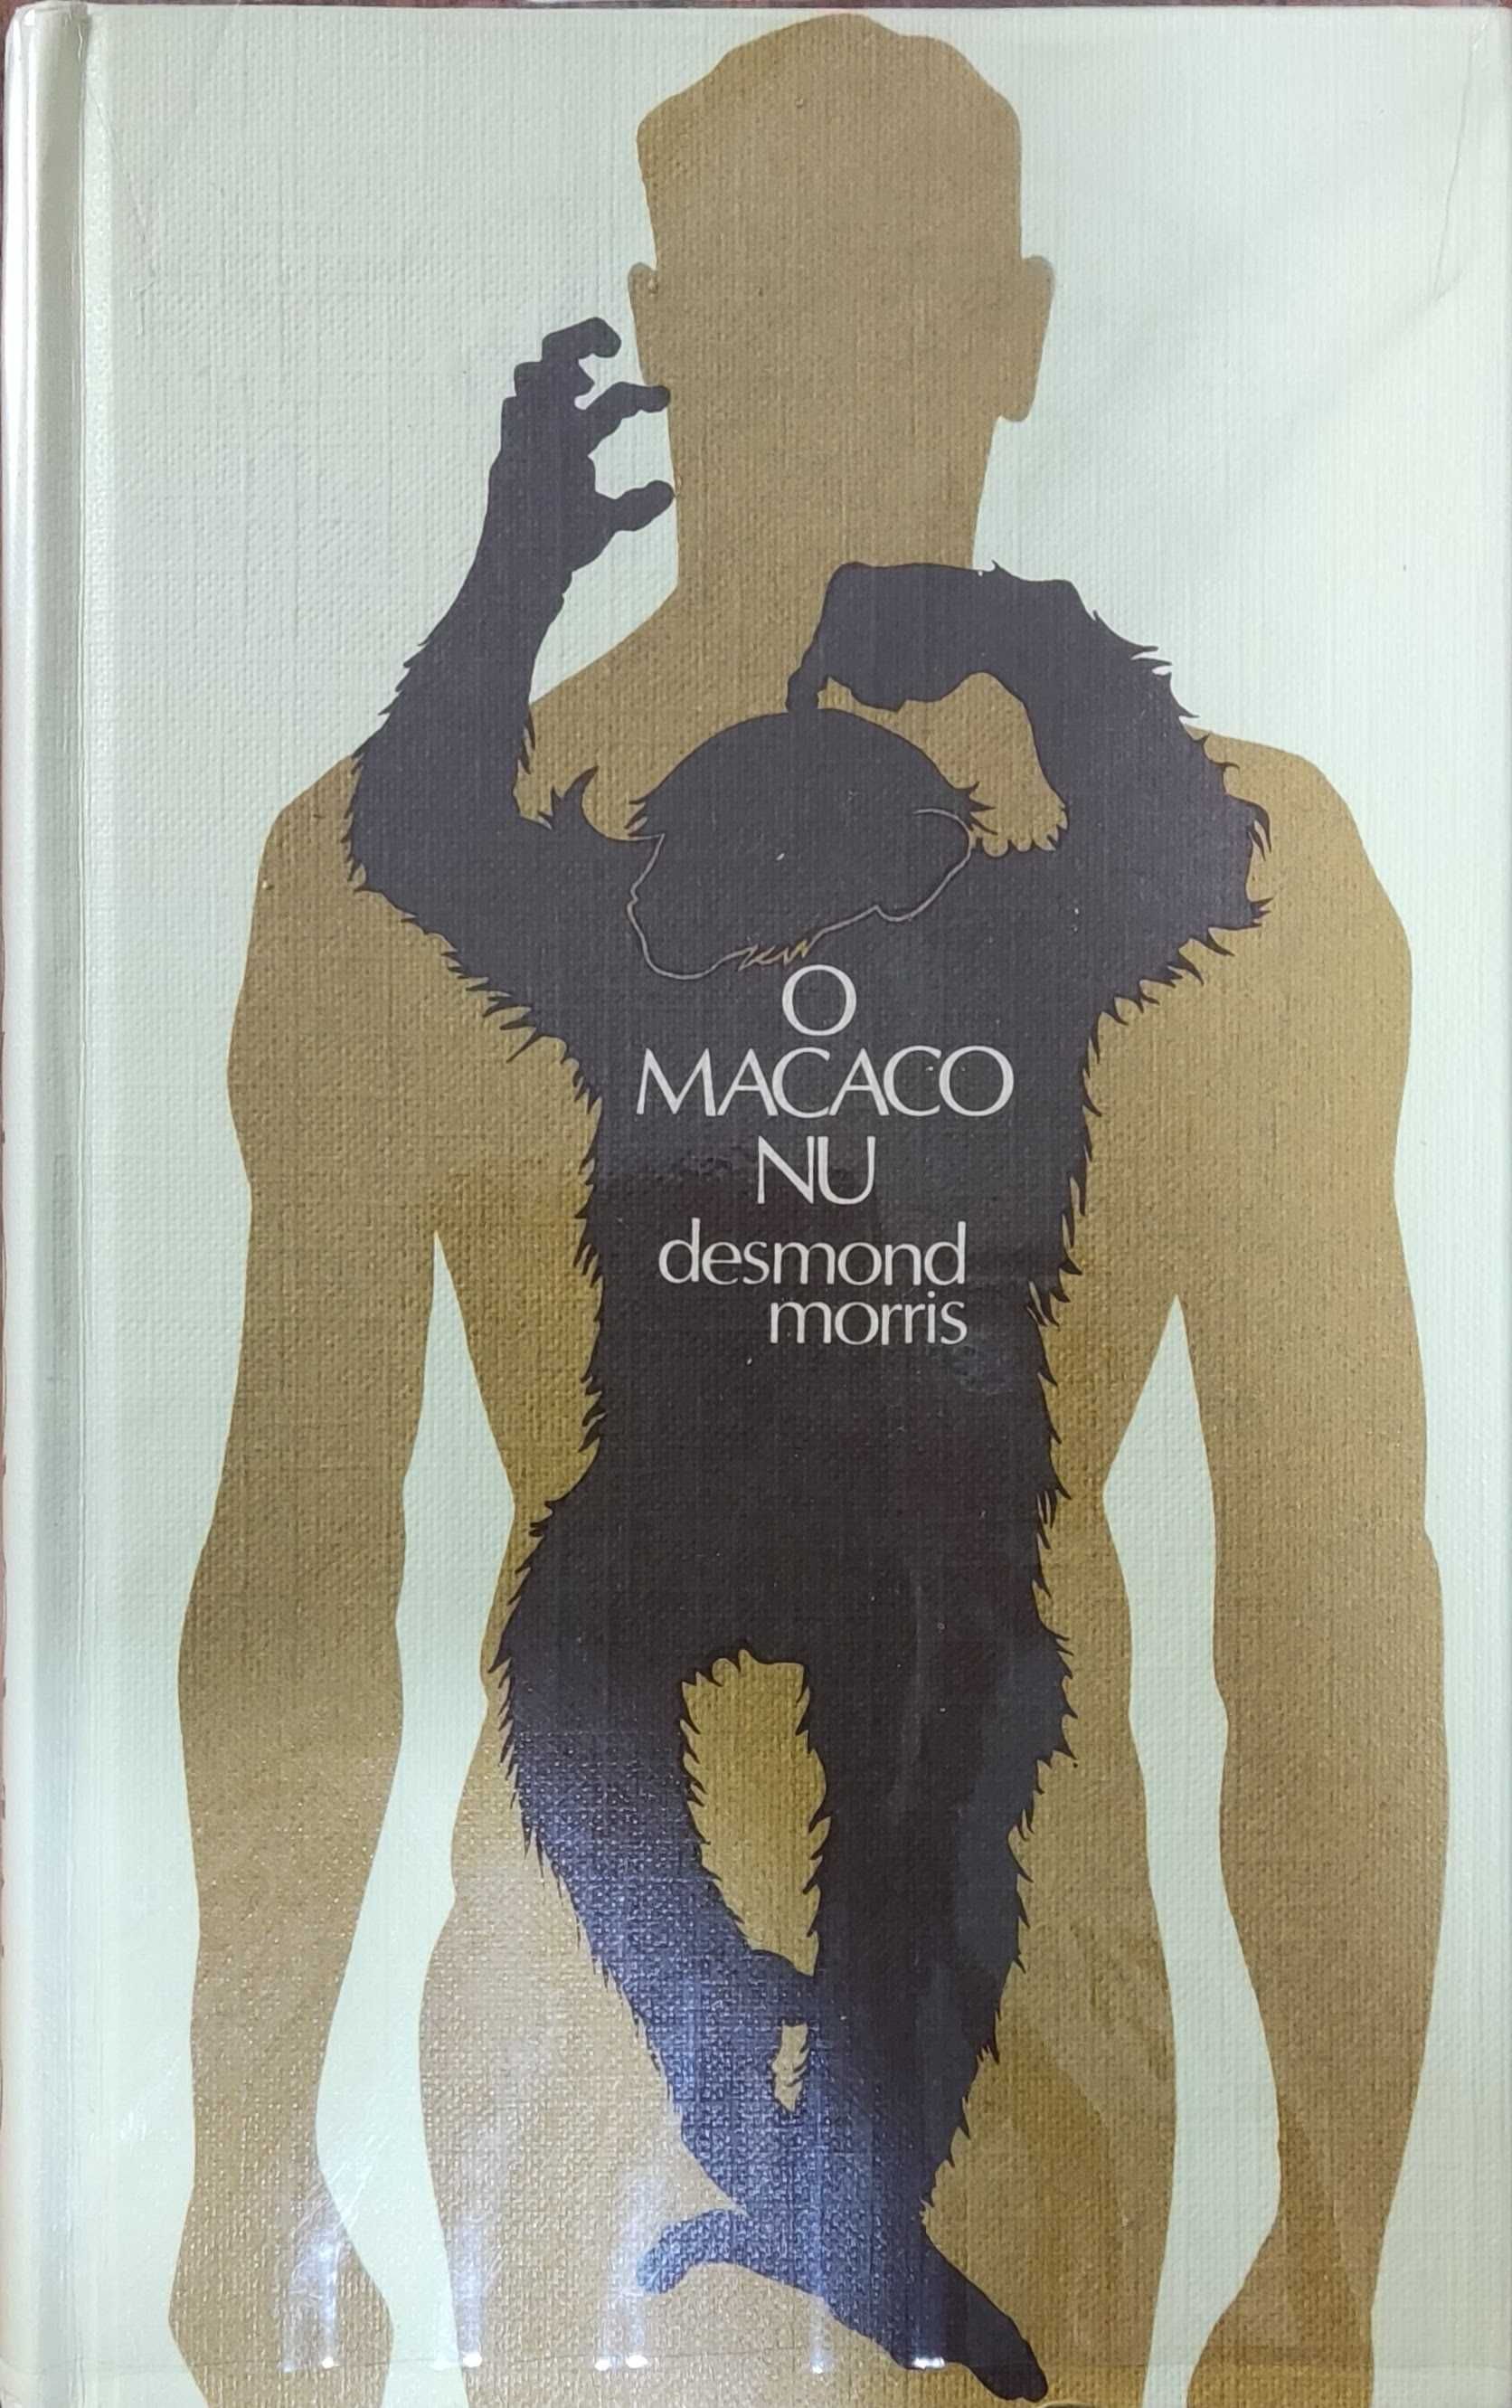 Livro "O MACACO NU" de Desmond Morris